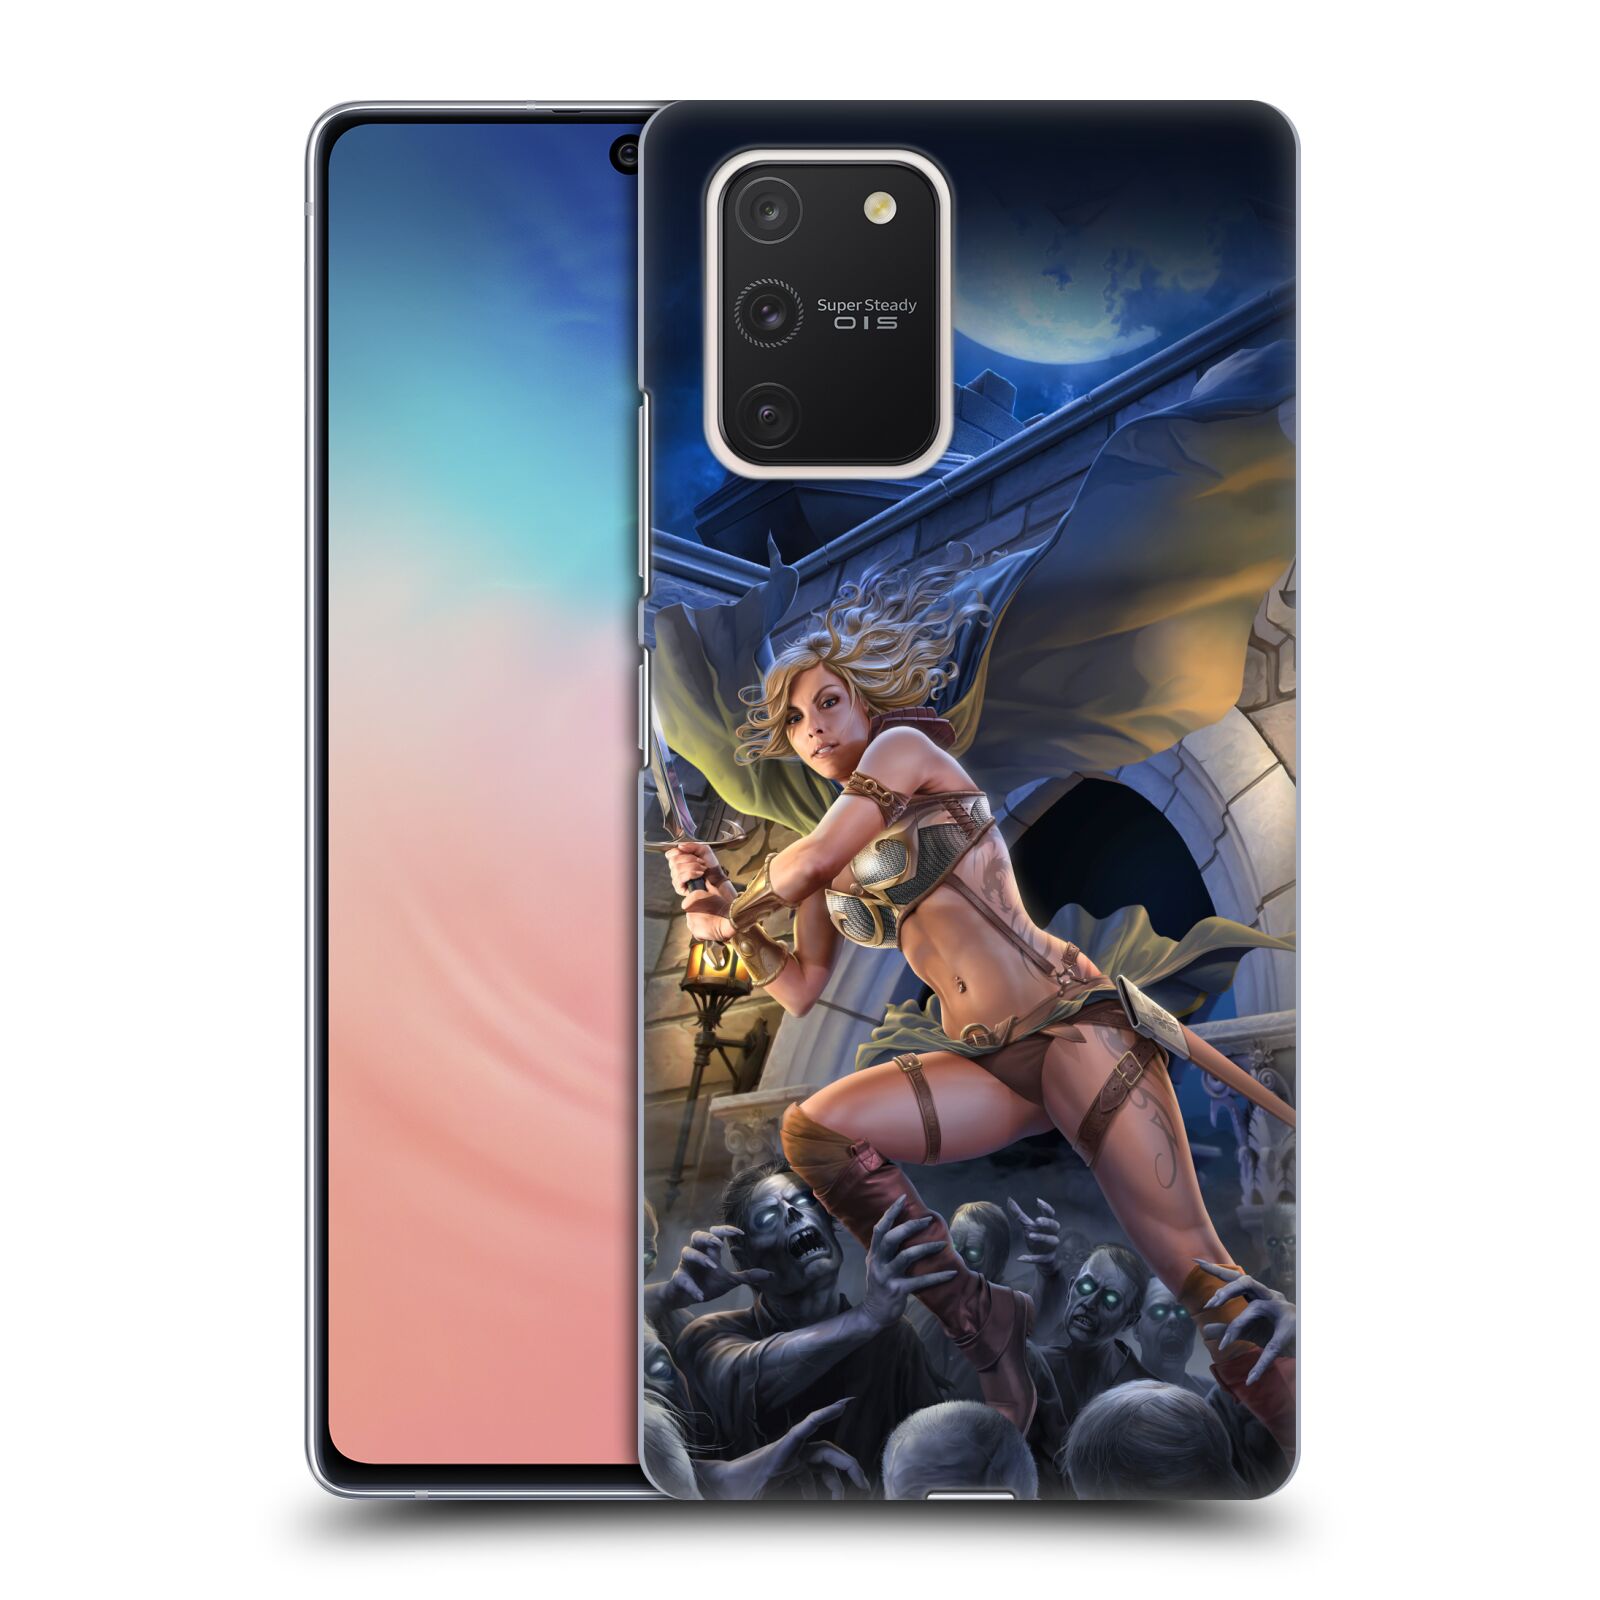 Pouzdro na mobil Samsung Galaxy S10 LITE - HEAD CASE - Fantasy kresby Tom Wood - Princezna bojovnice a zombies